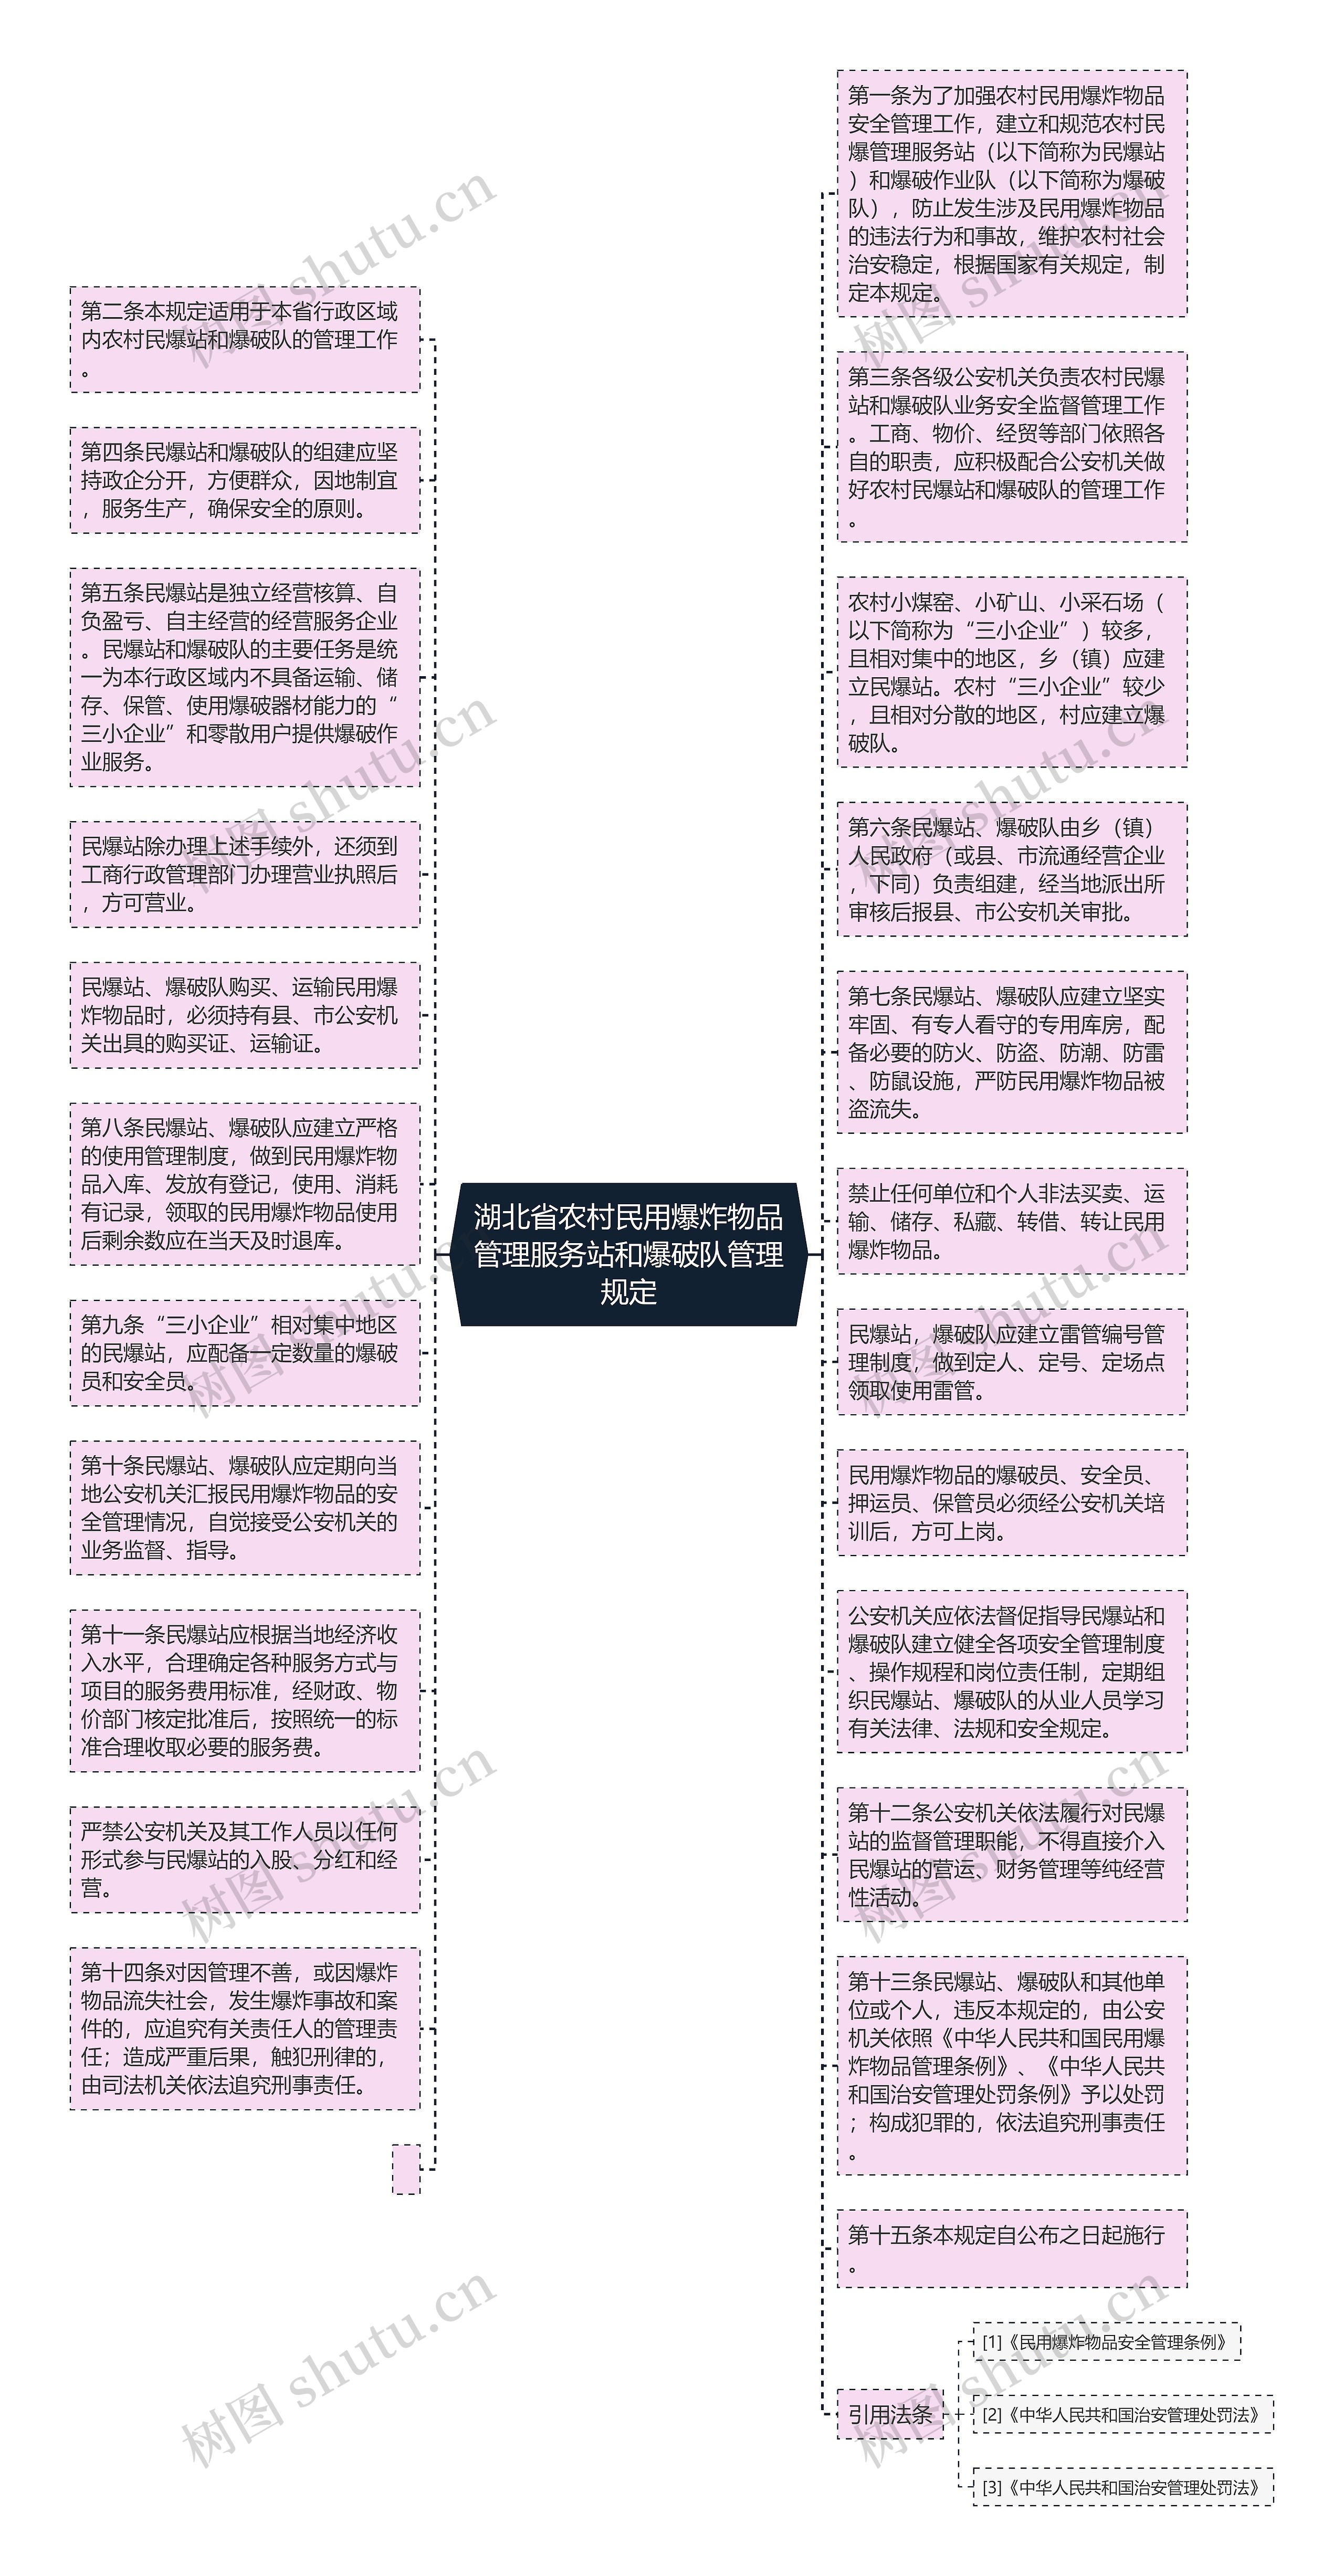 湖北省农村民用爆炸物品管理服务站和爆破队管理规定思维导图